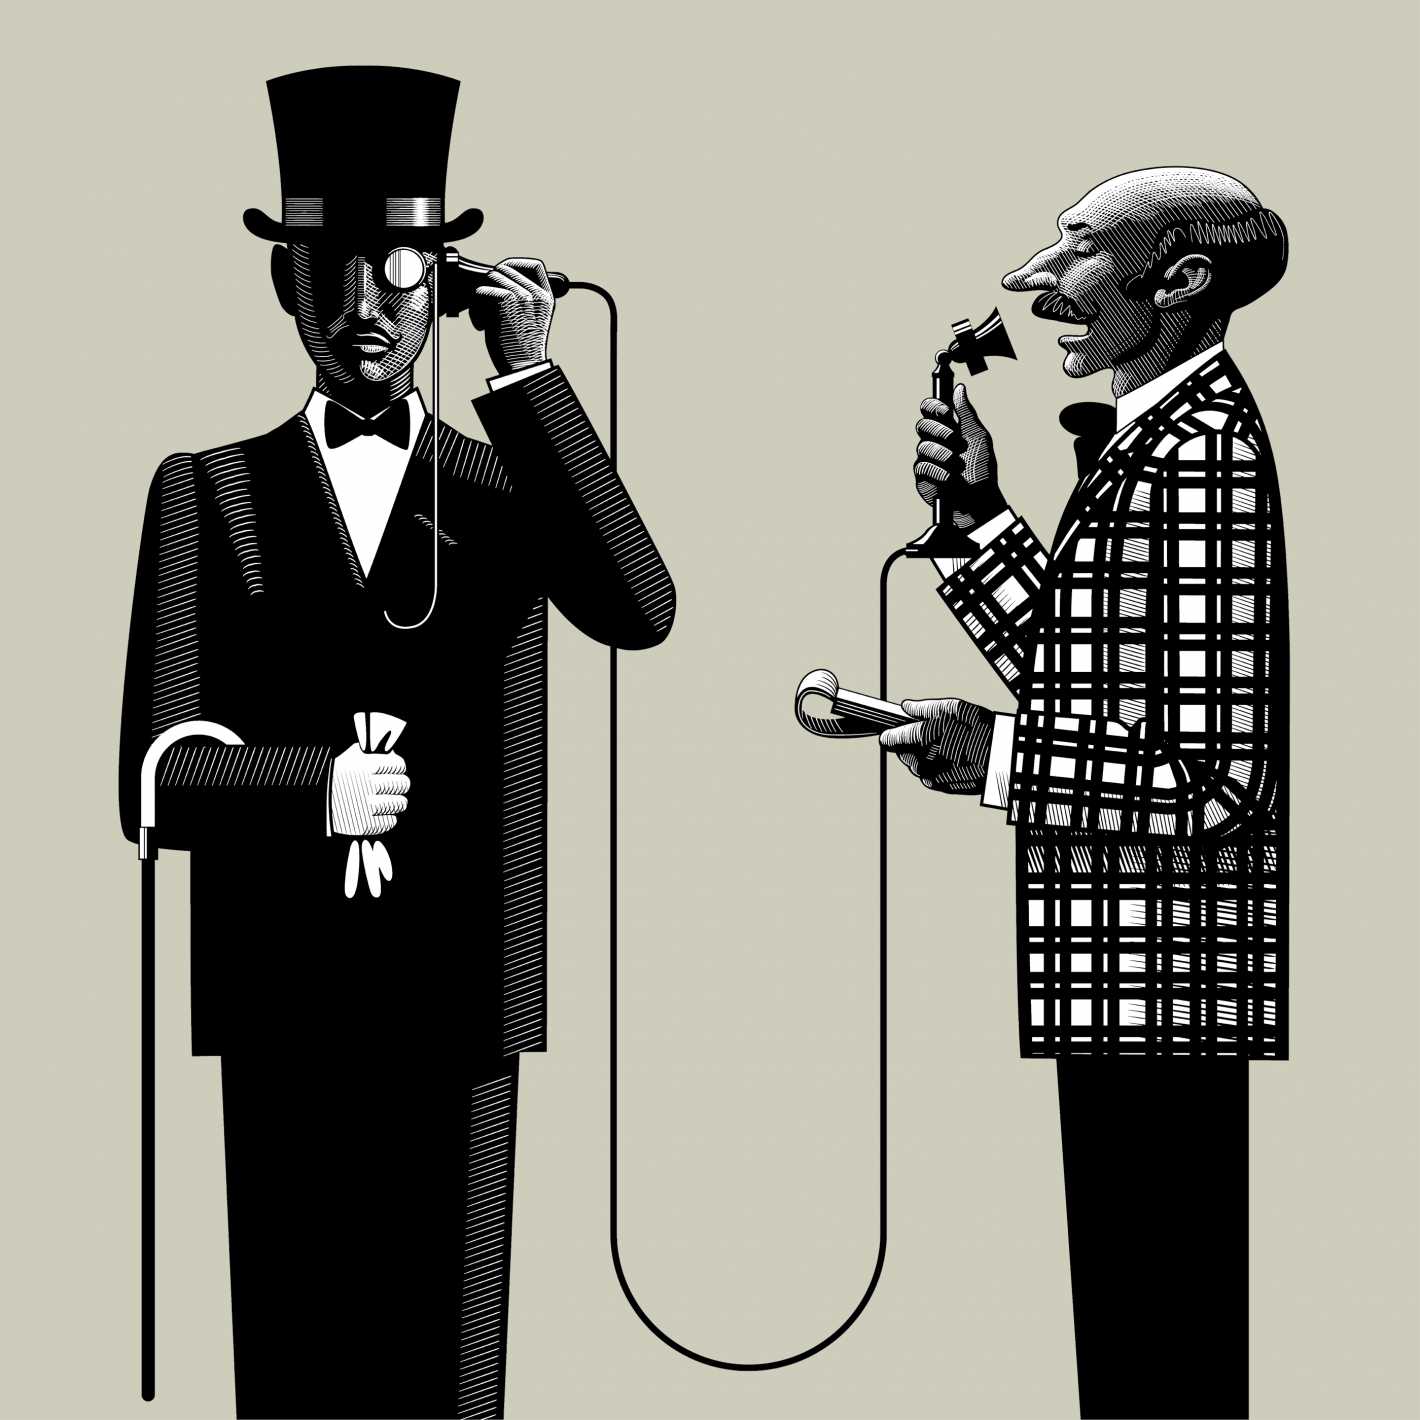 Обложка к статье с двумя мужчинами, говорящими по телефону.